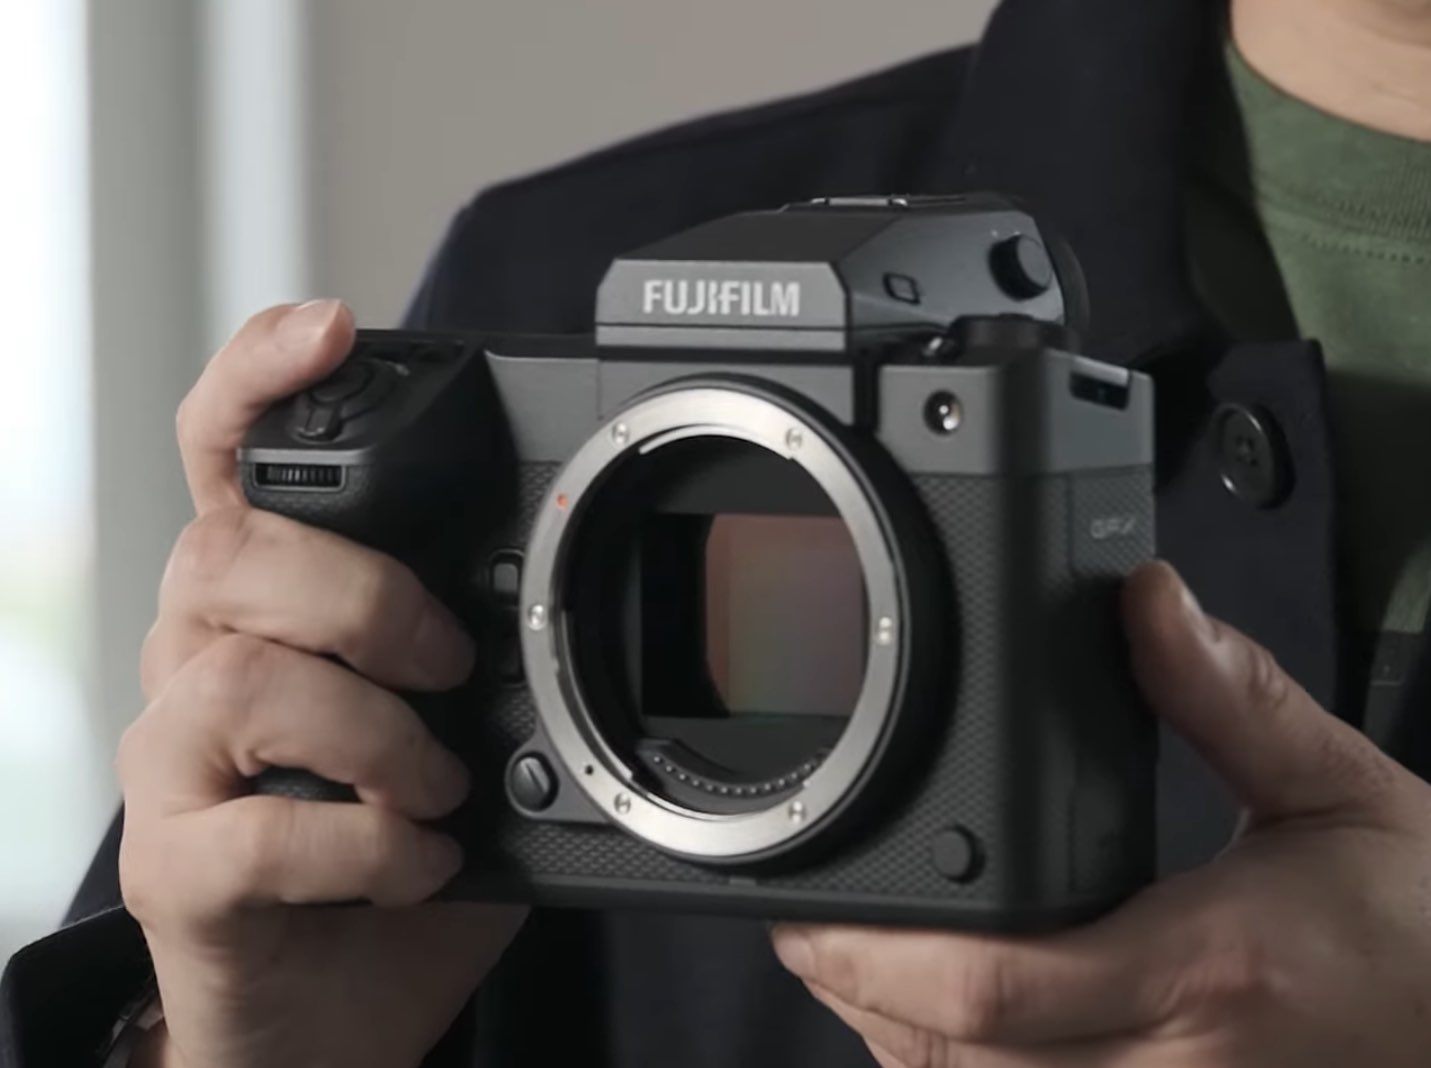 Fujifilm Fujinon GF100-200mmF5.6 R LM OIS WR Size Comparison - Pre Orders  at 12 PM - Fuji Rumors